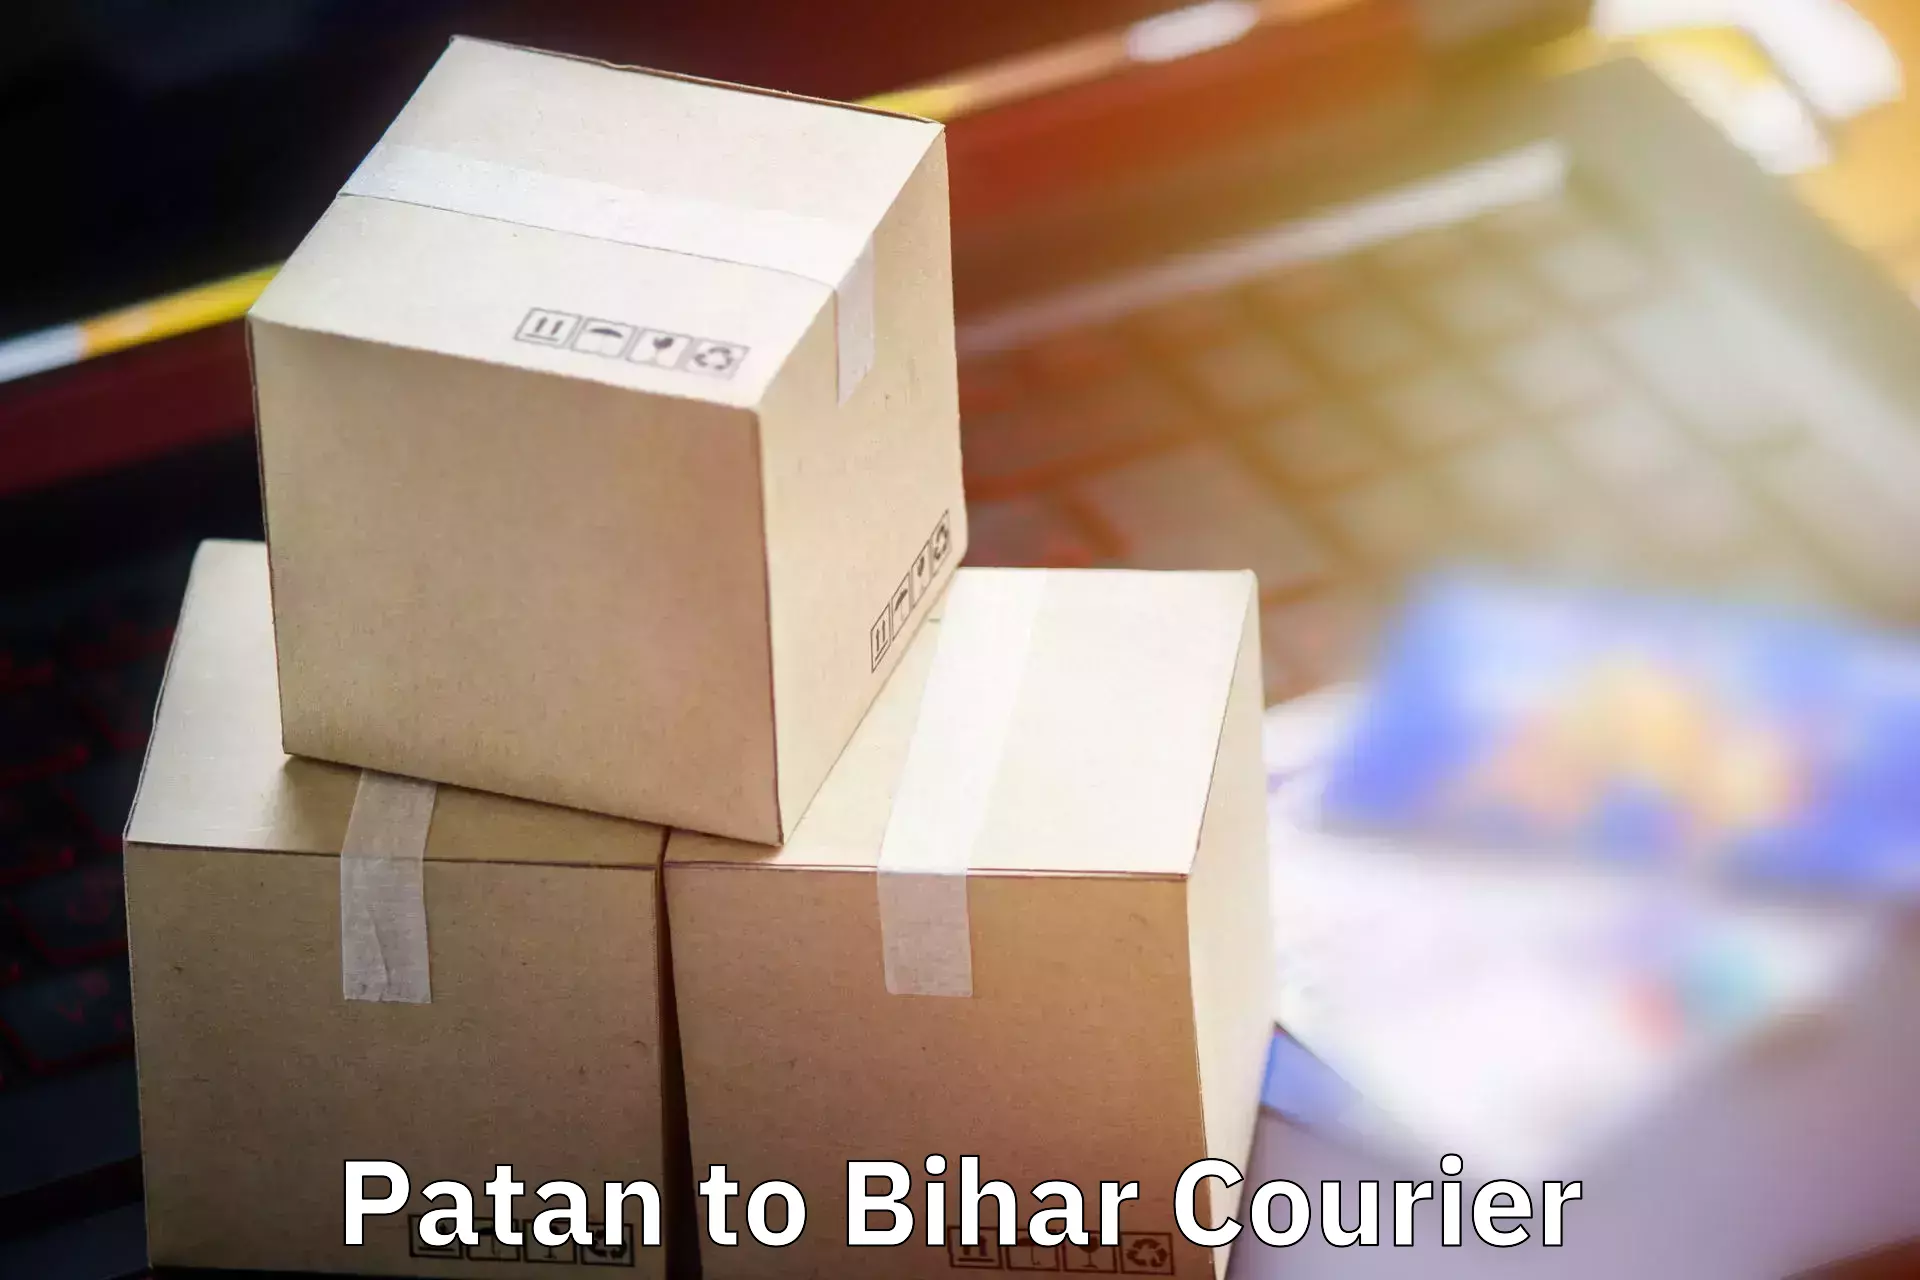 Baggage shipping service Patan to Danapur